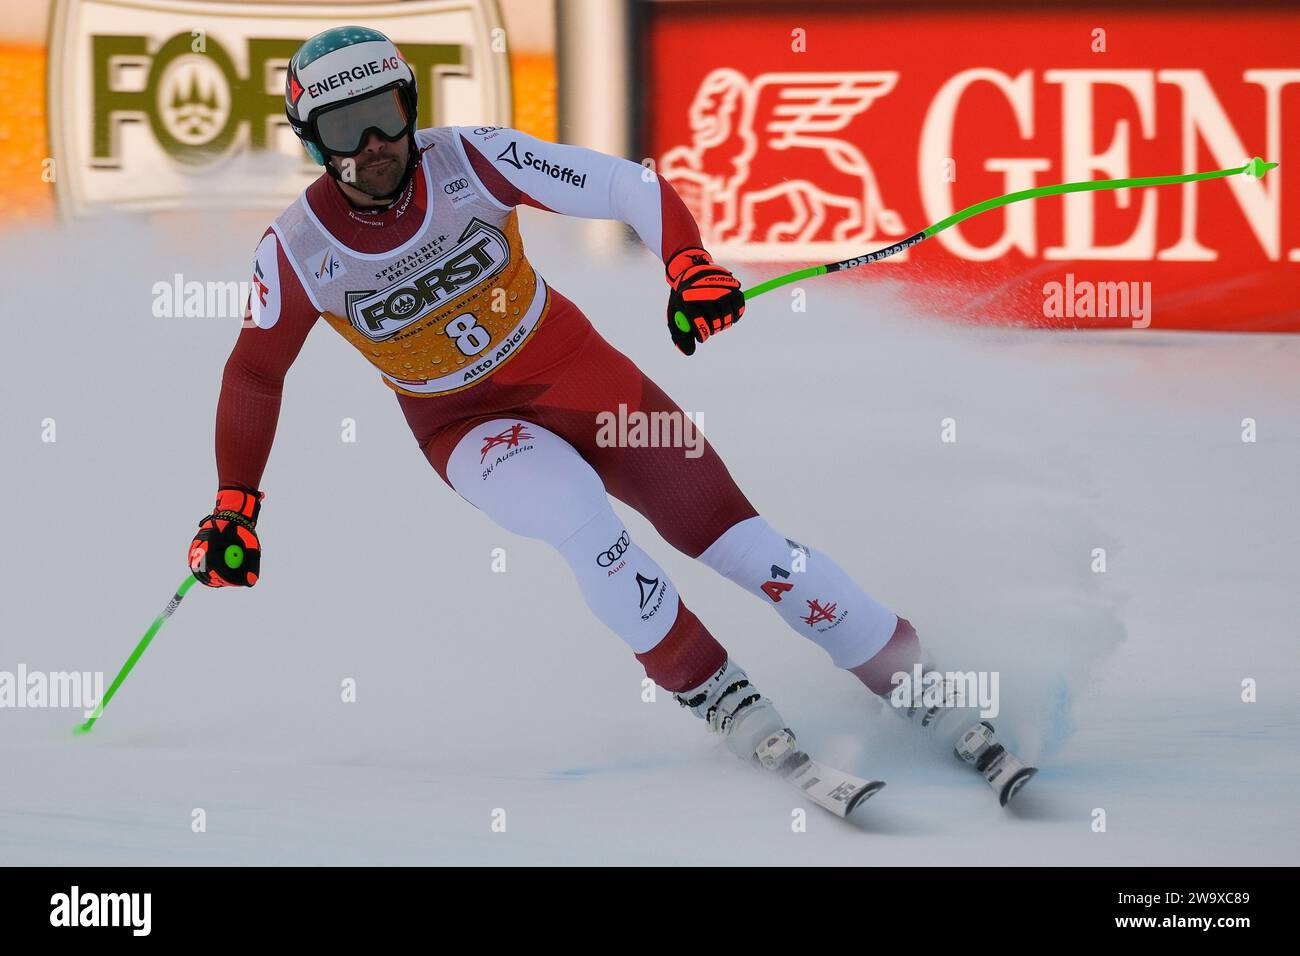 Vincent Kriechmayr (AUT) gareggia durante la Coppa del mondo di sci alpino Audi FIS, MenÕs gara di Downhill sul Saslong Slope in Val Gardena il 16 dicembre 2023, Foto Stock